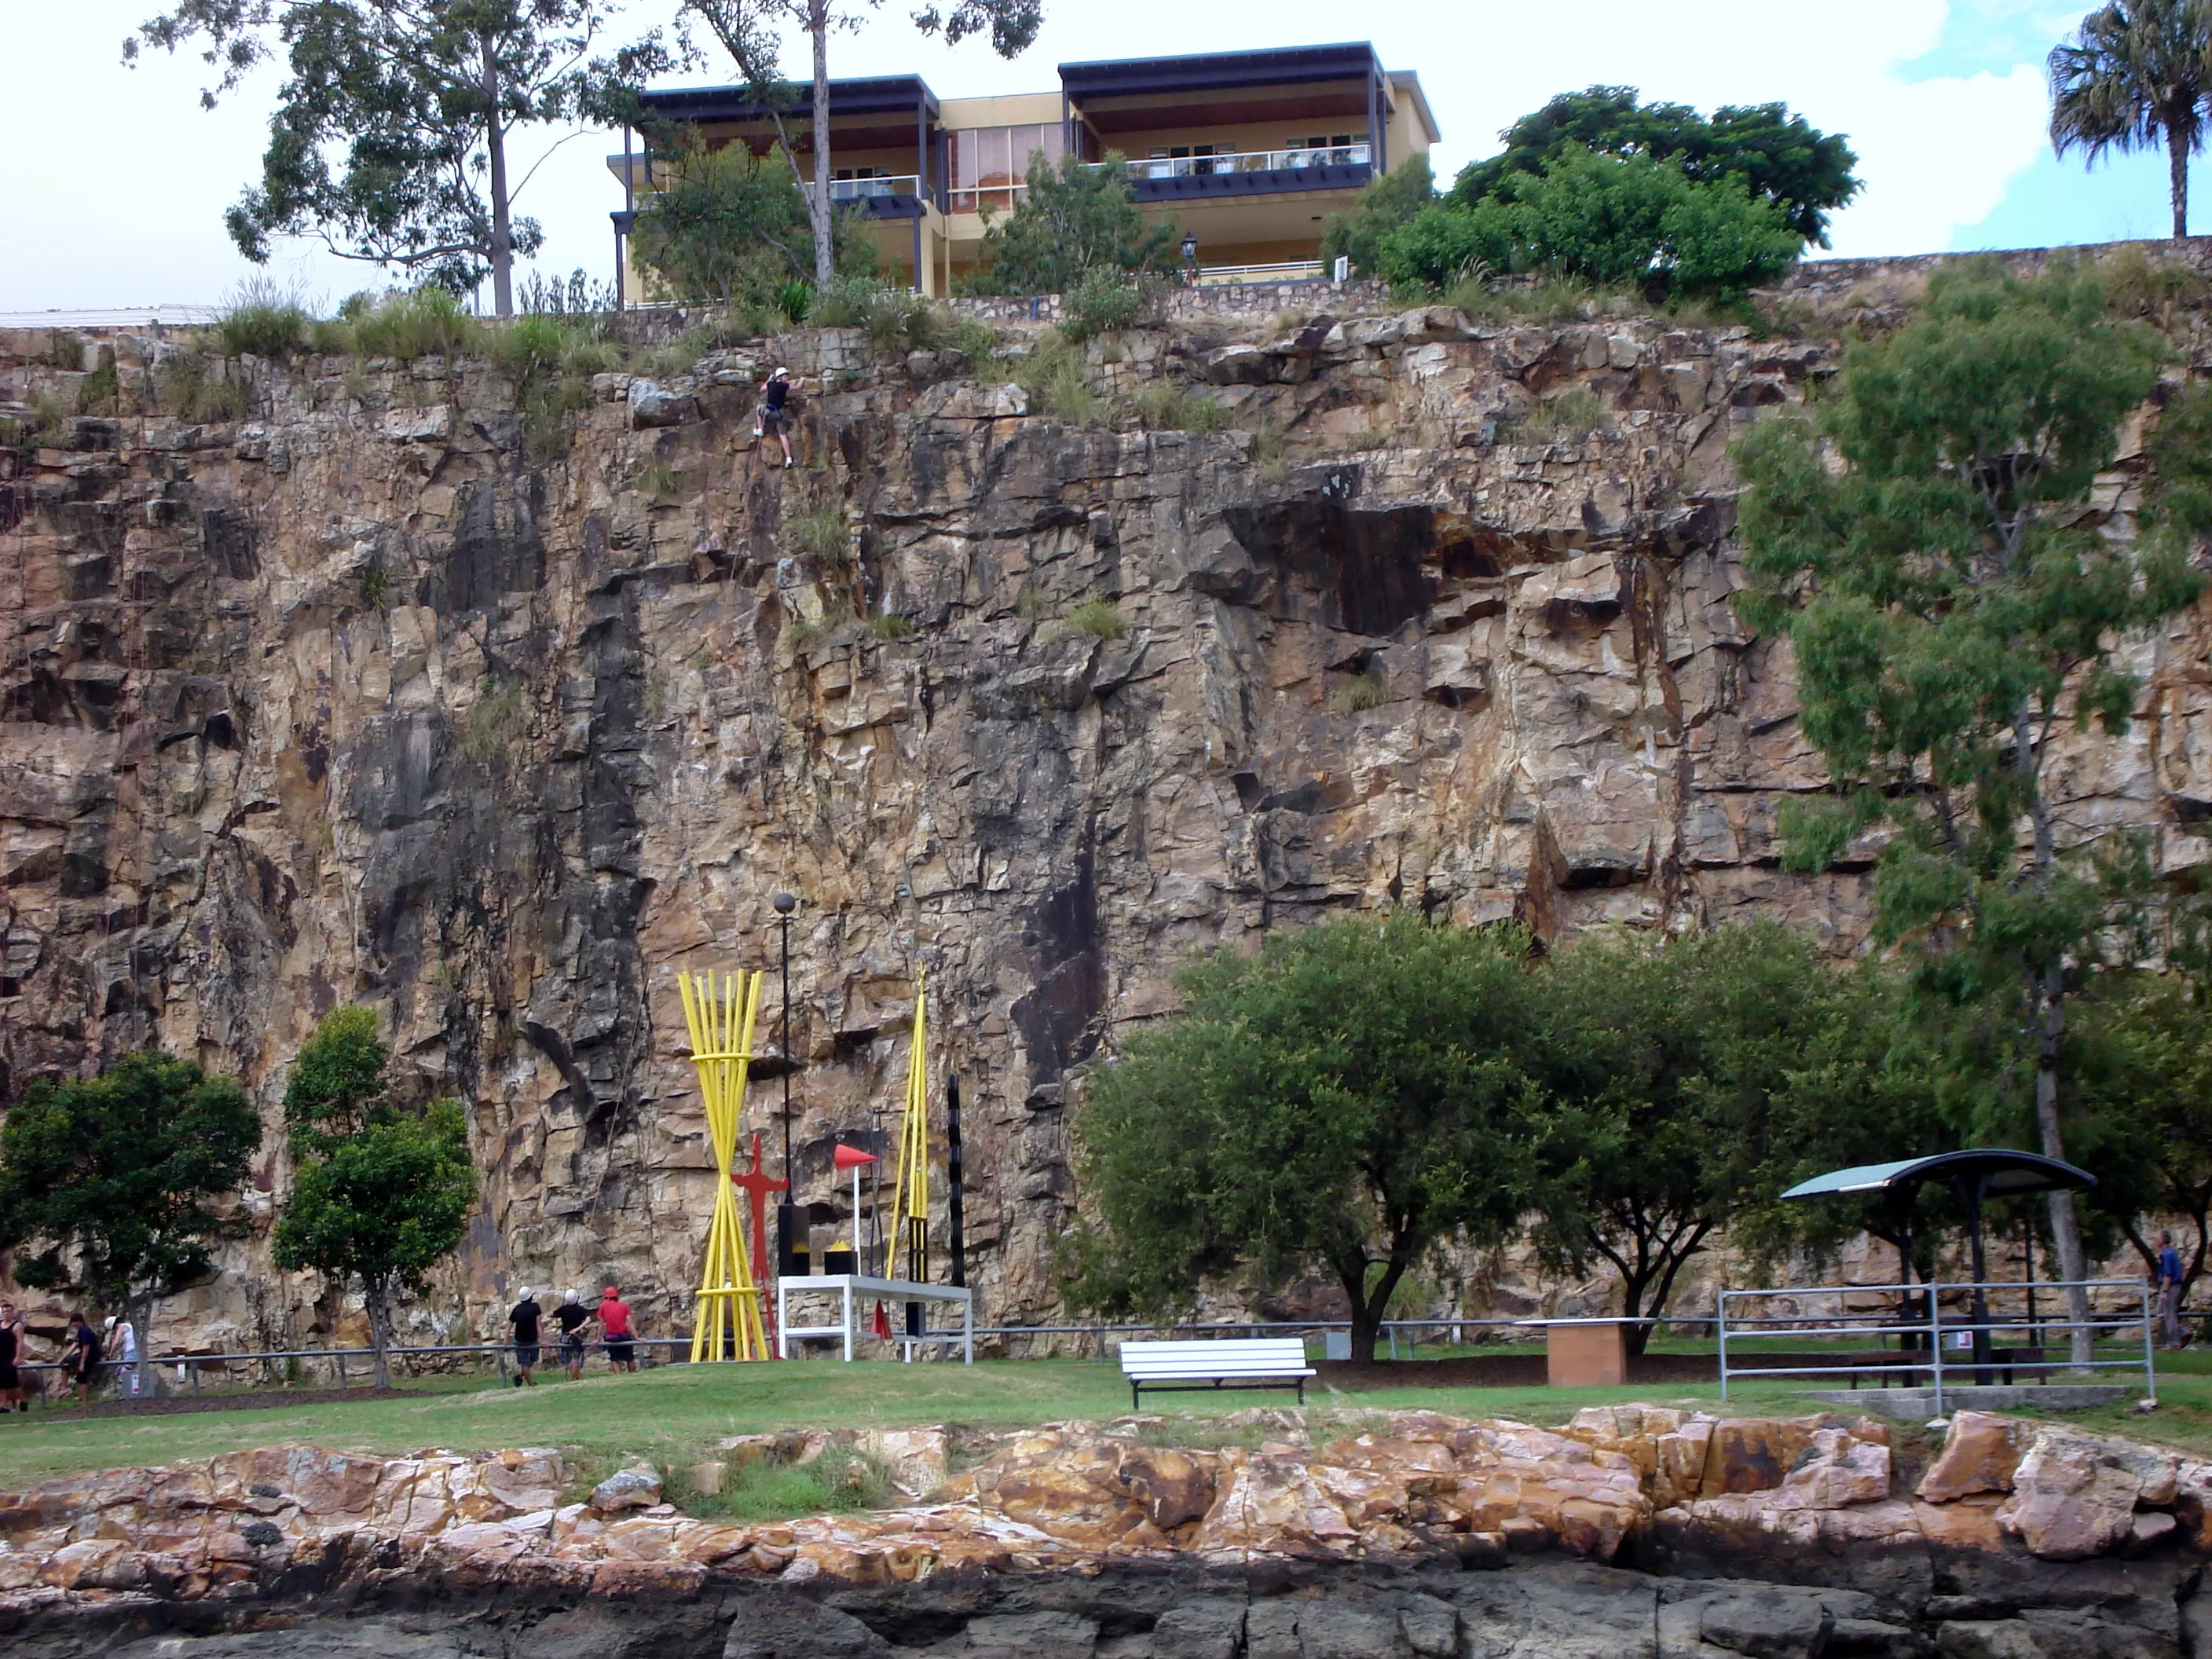 The Kangaroo Point cliffs.